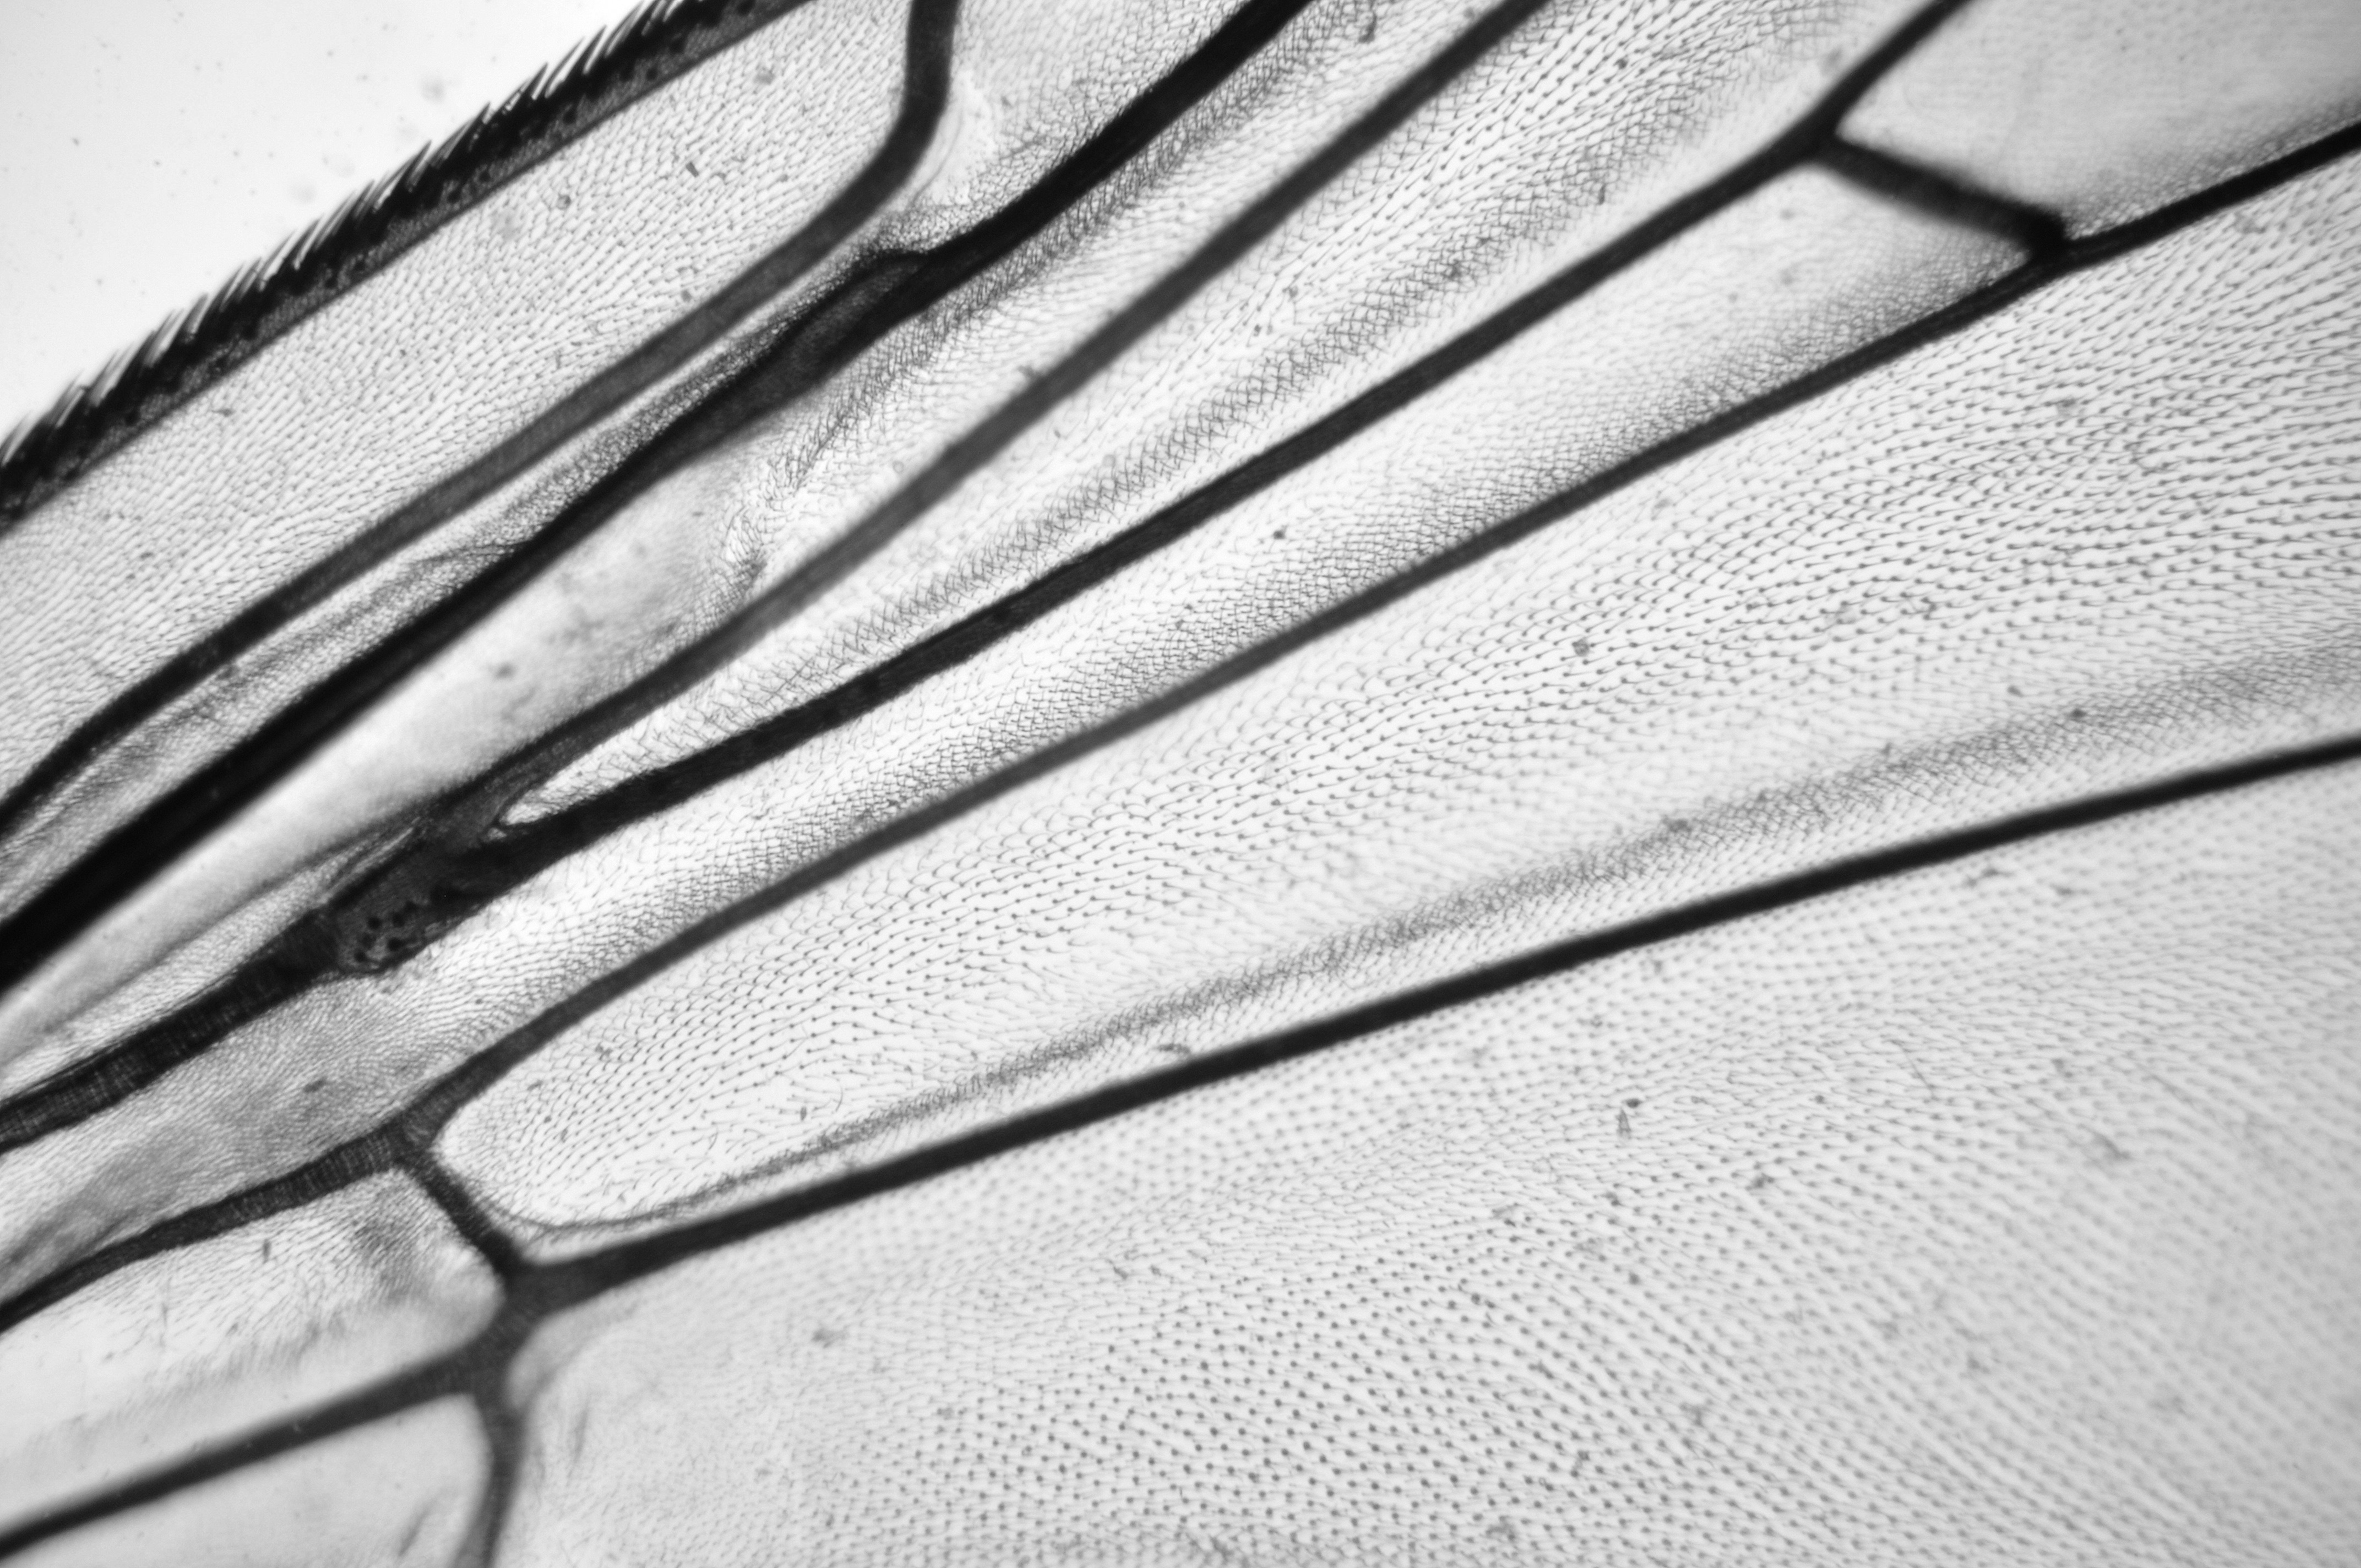 Flügel einer Stubenfliege (ca. 100fache Vergrößerung)  